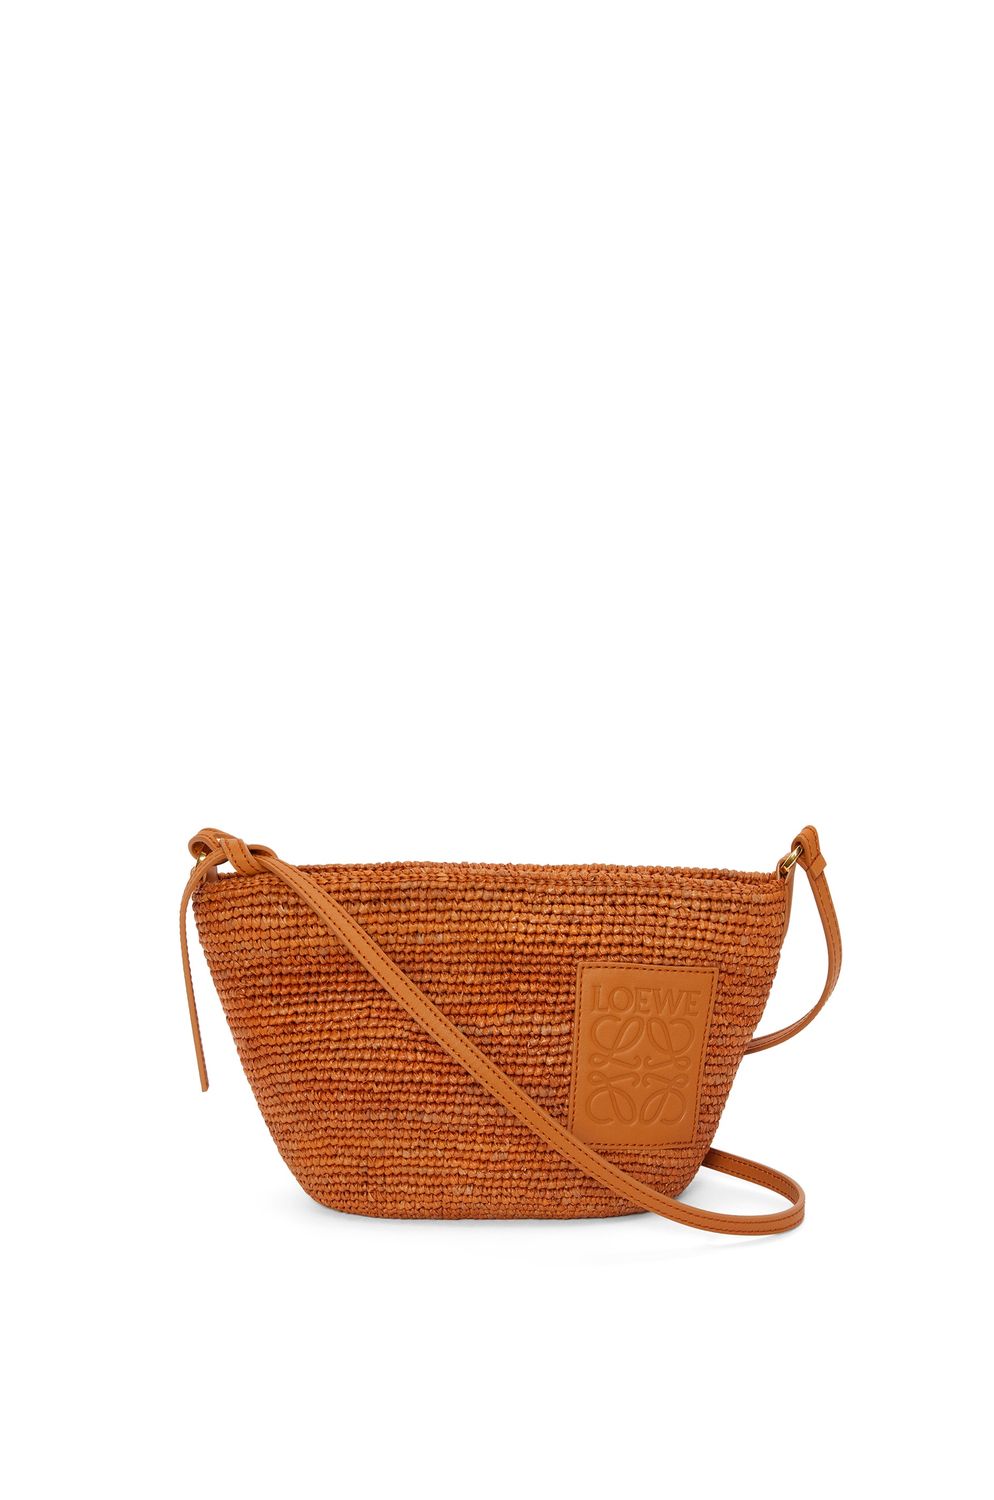 Golden Woven Handbag for Women from LOEWE